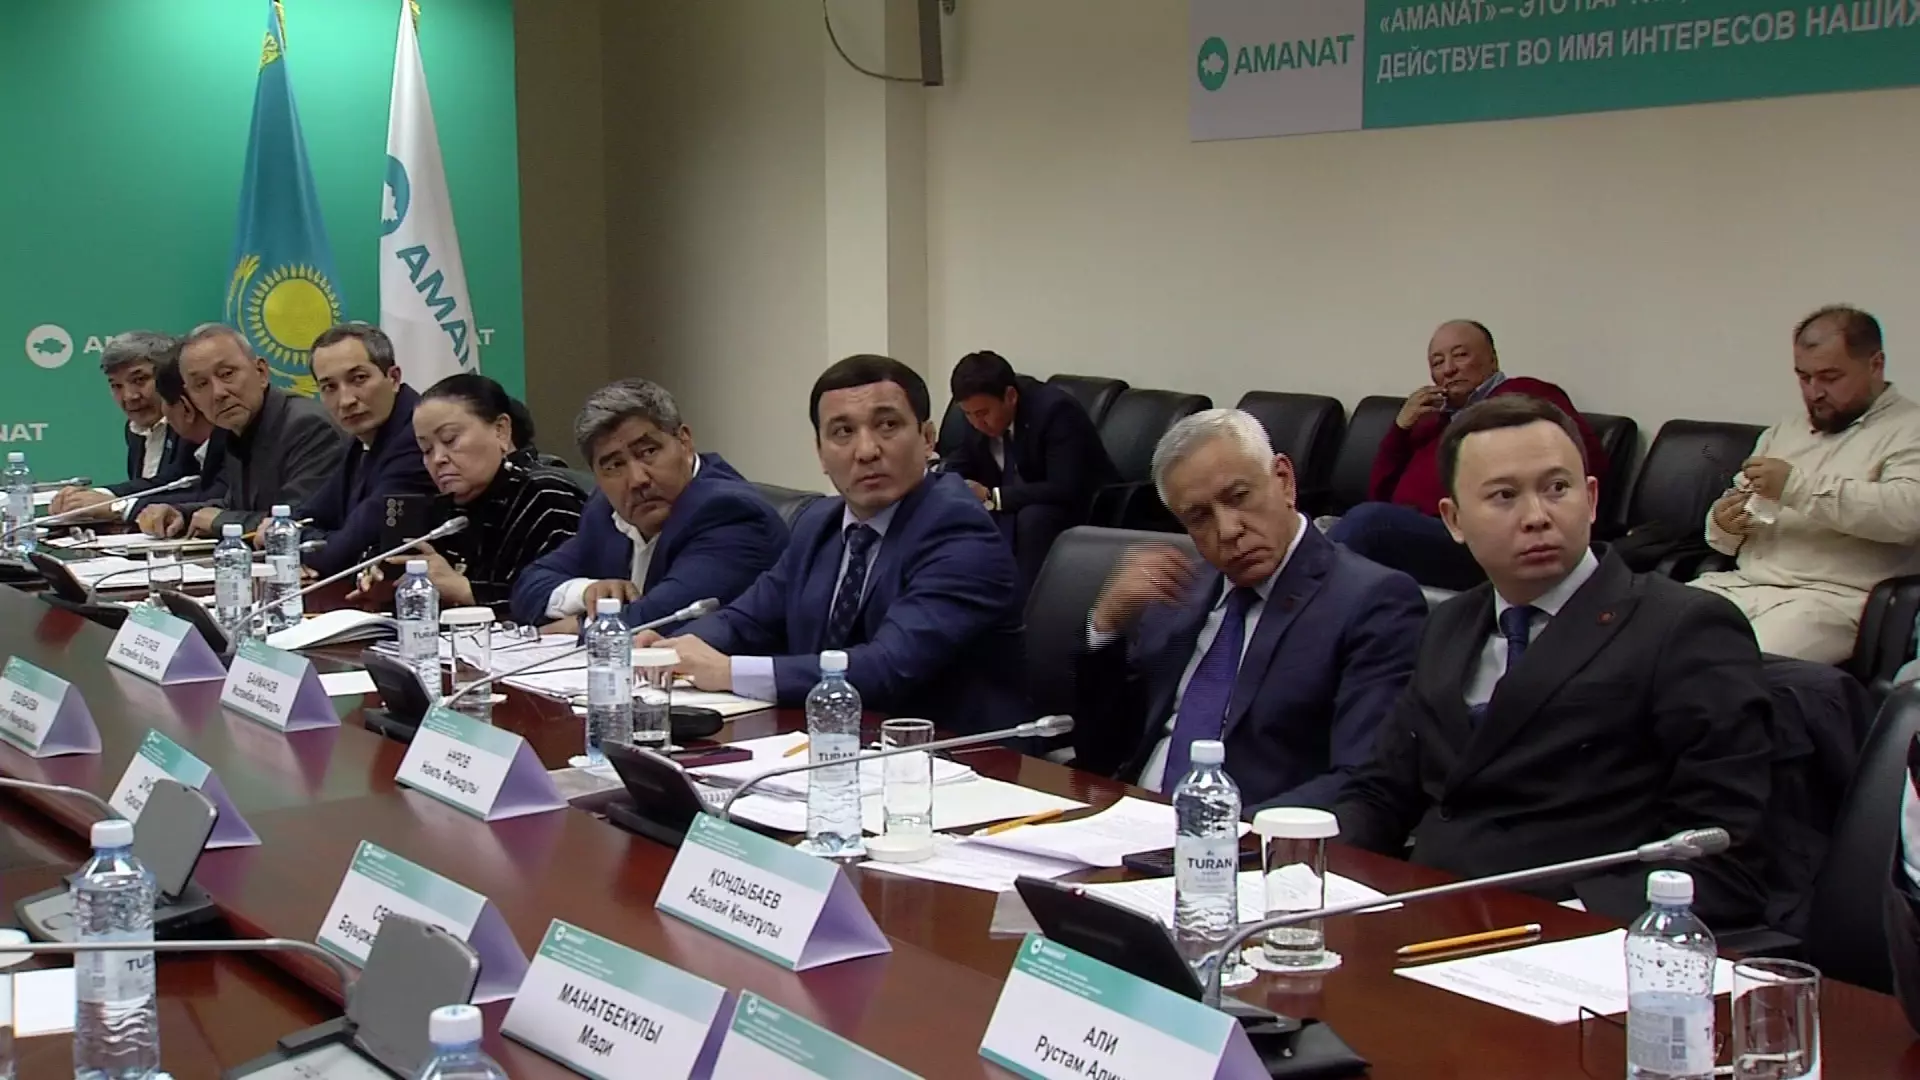 У работников культуры одни из самых низких заработных плат в Казахстане, - депутат